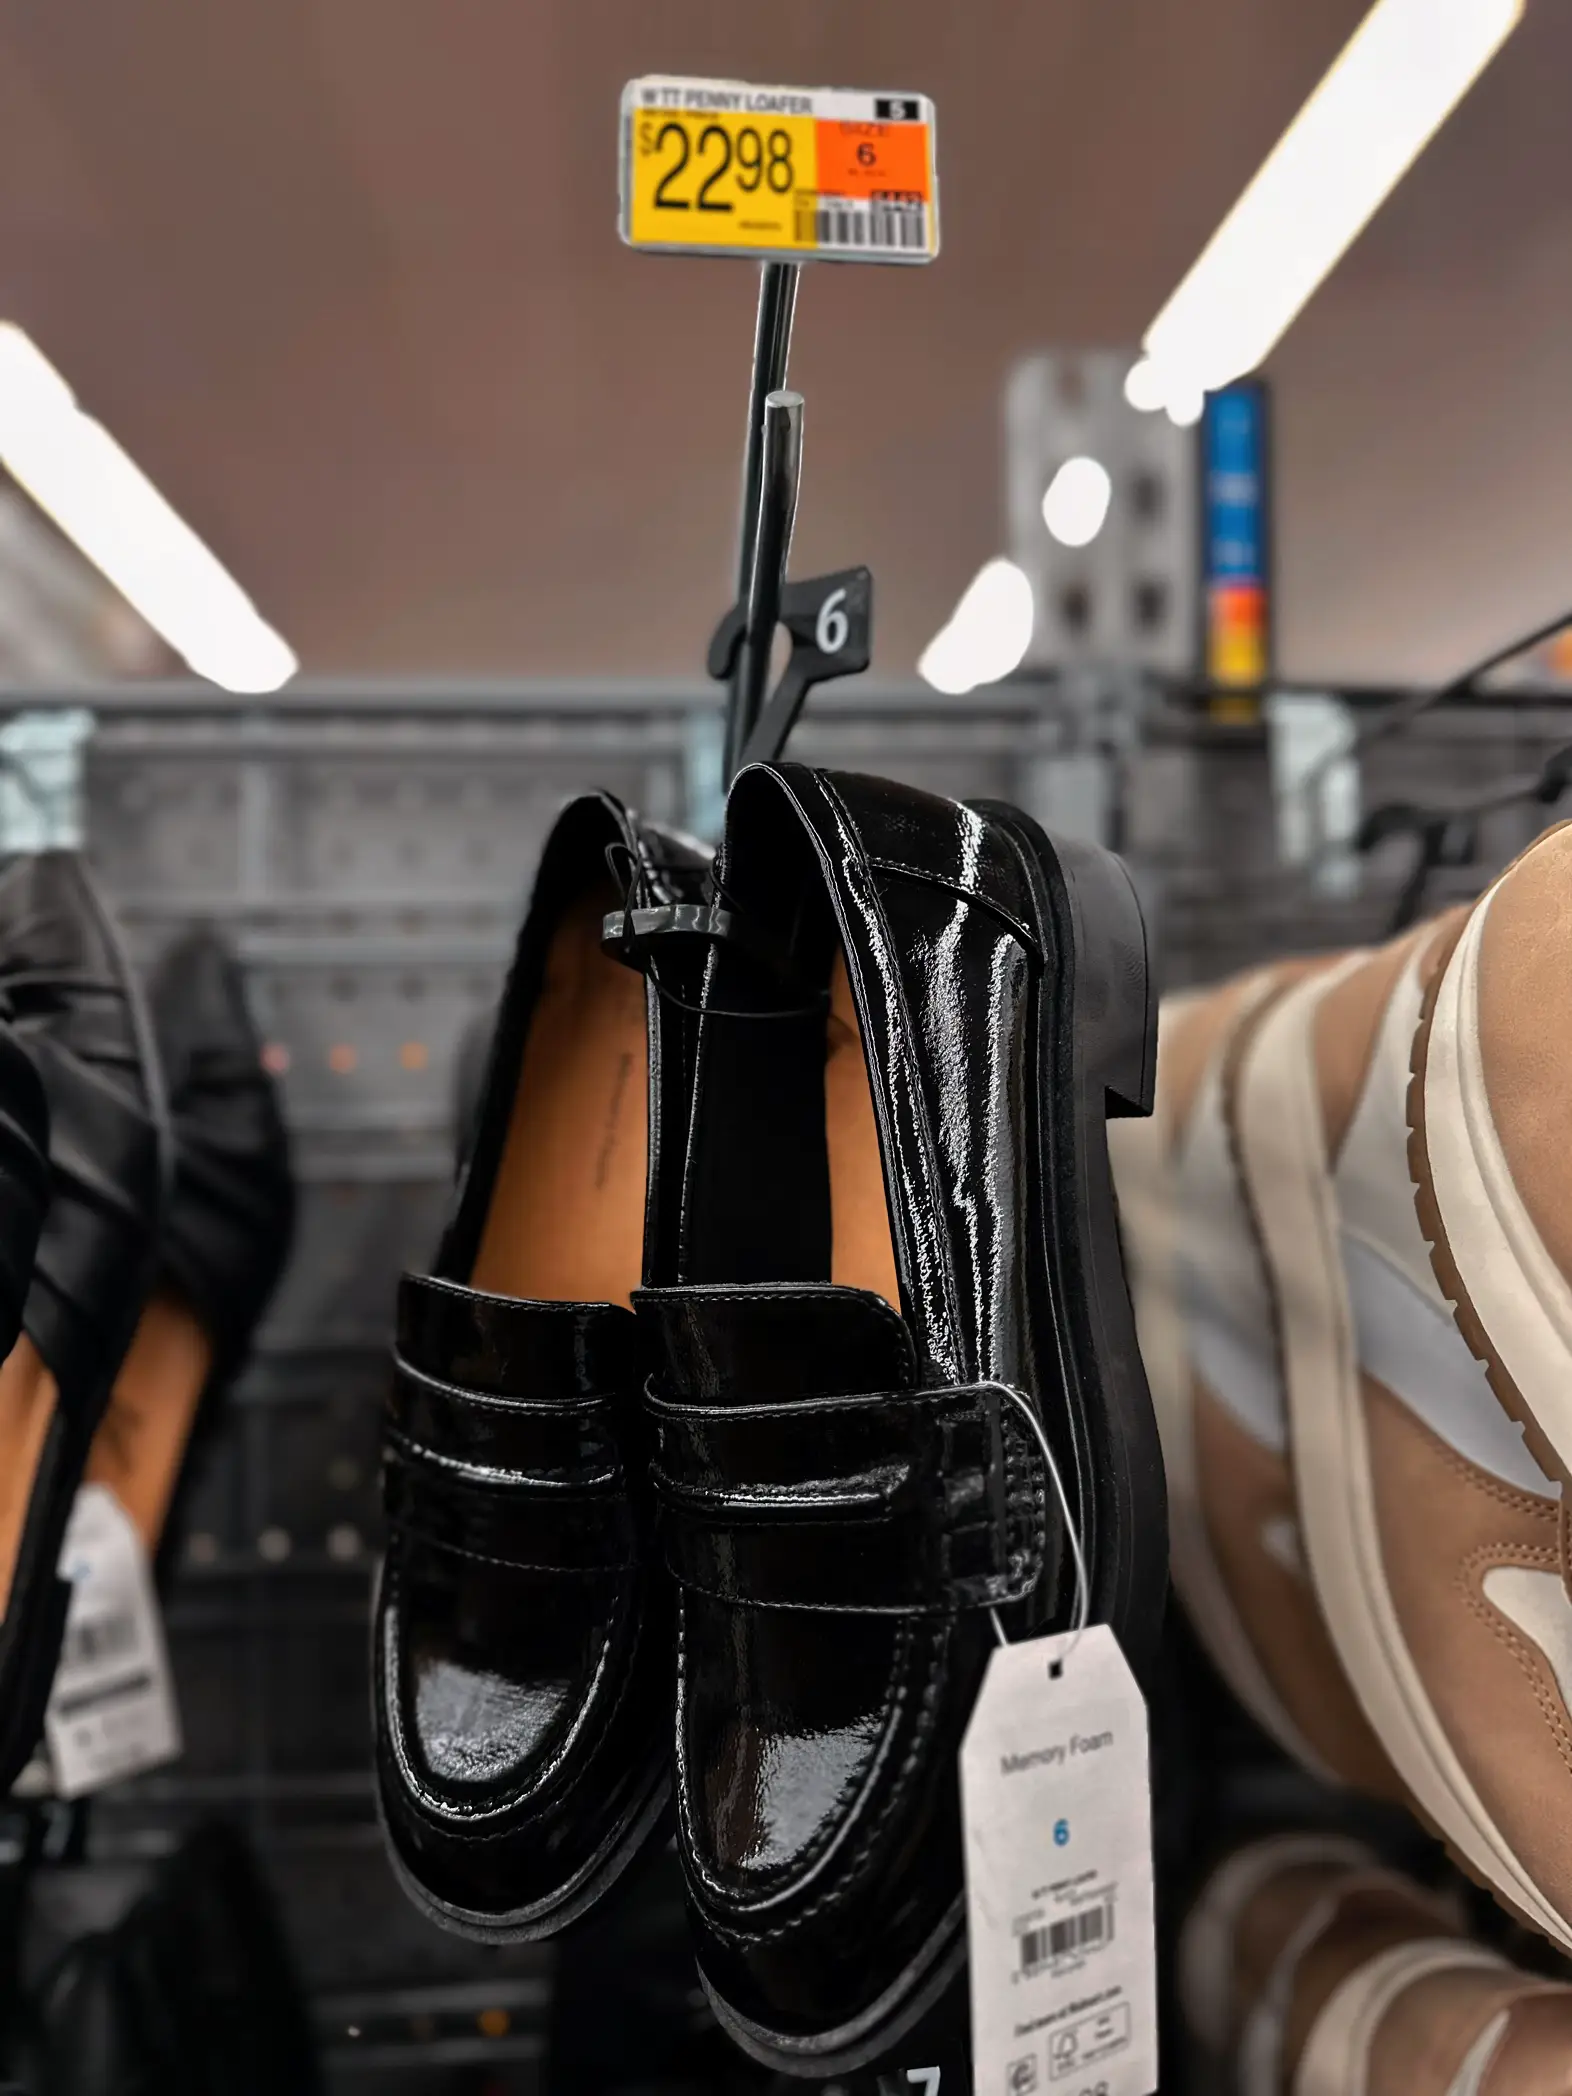 fall shoe bargains at Walmart - Lemon8 Search